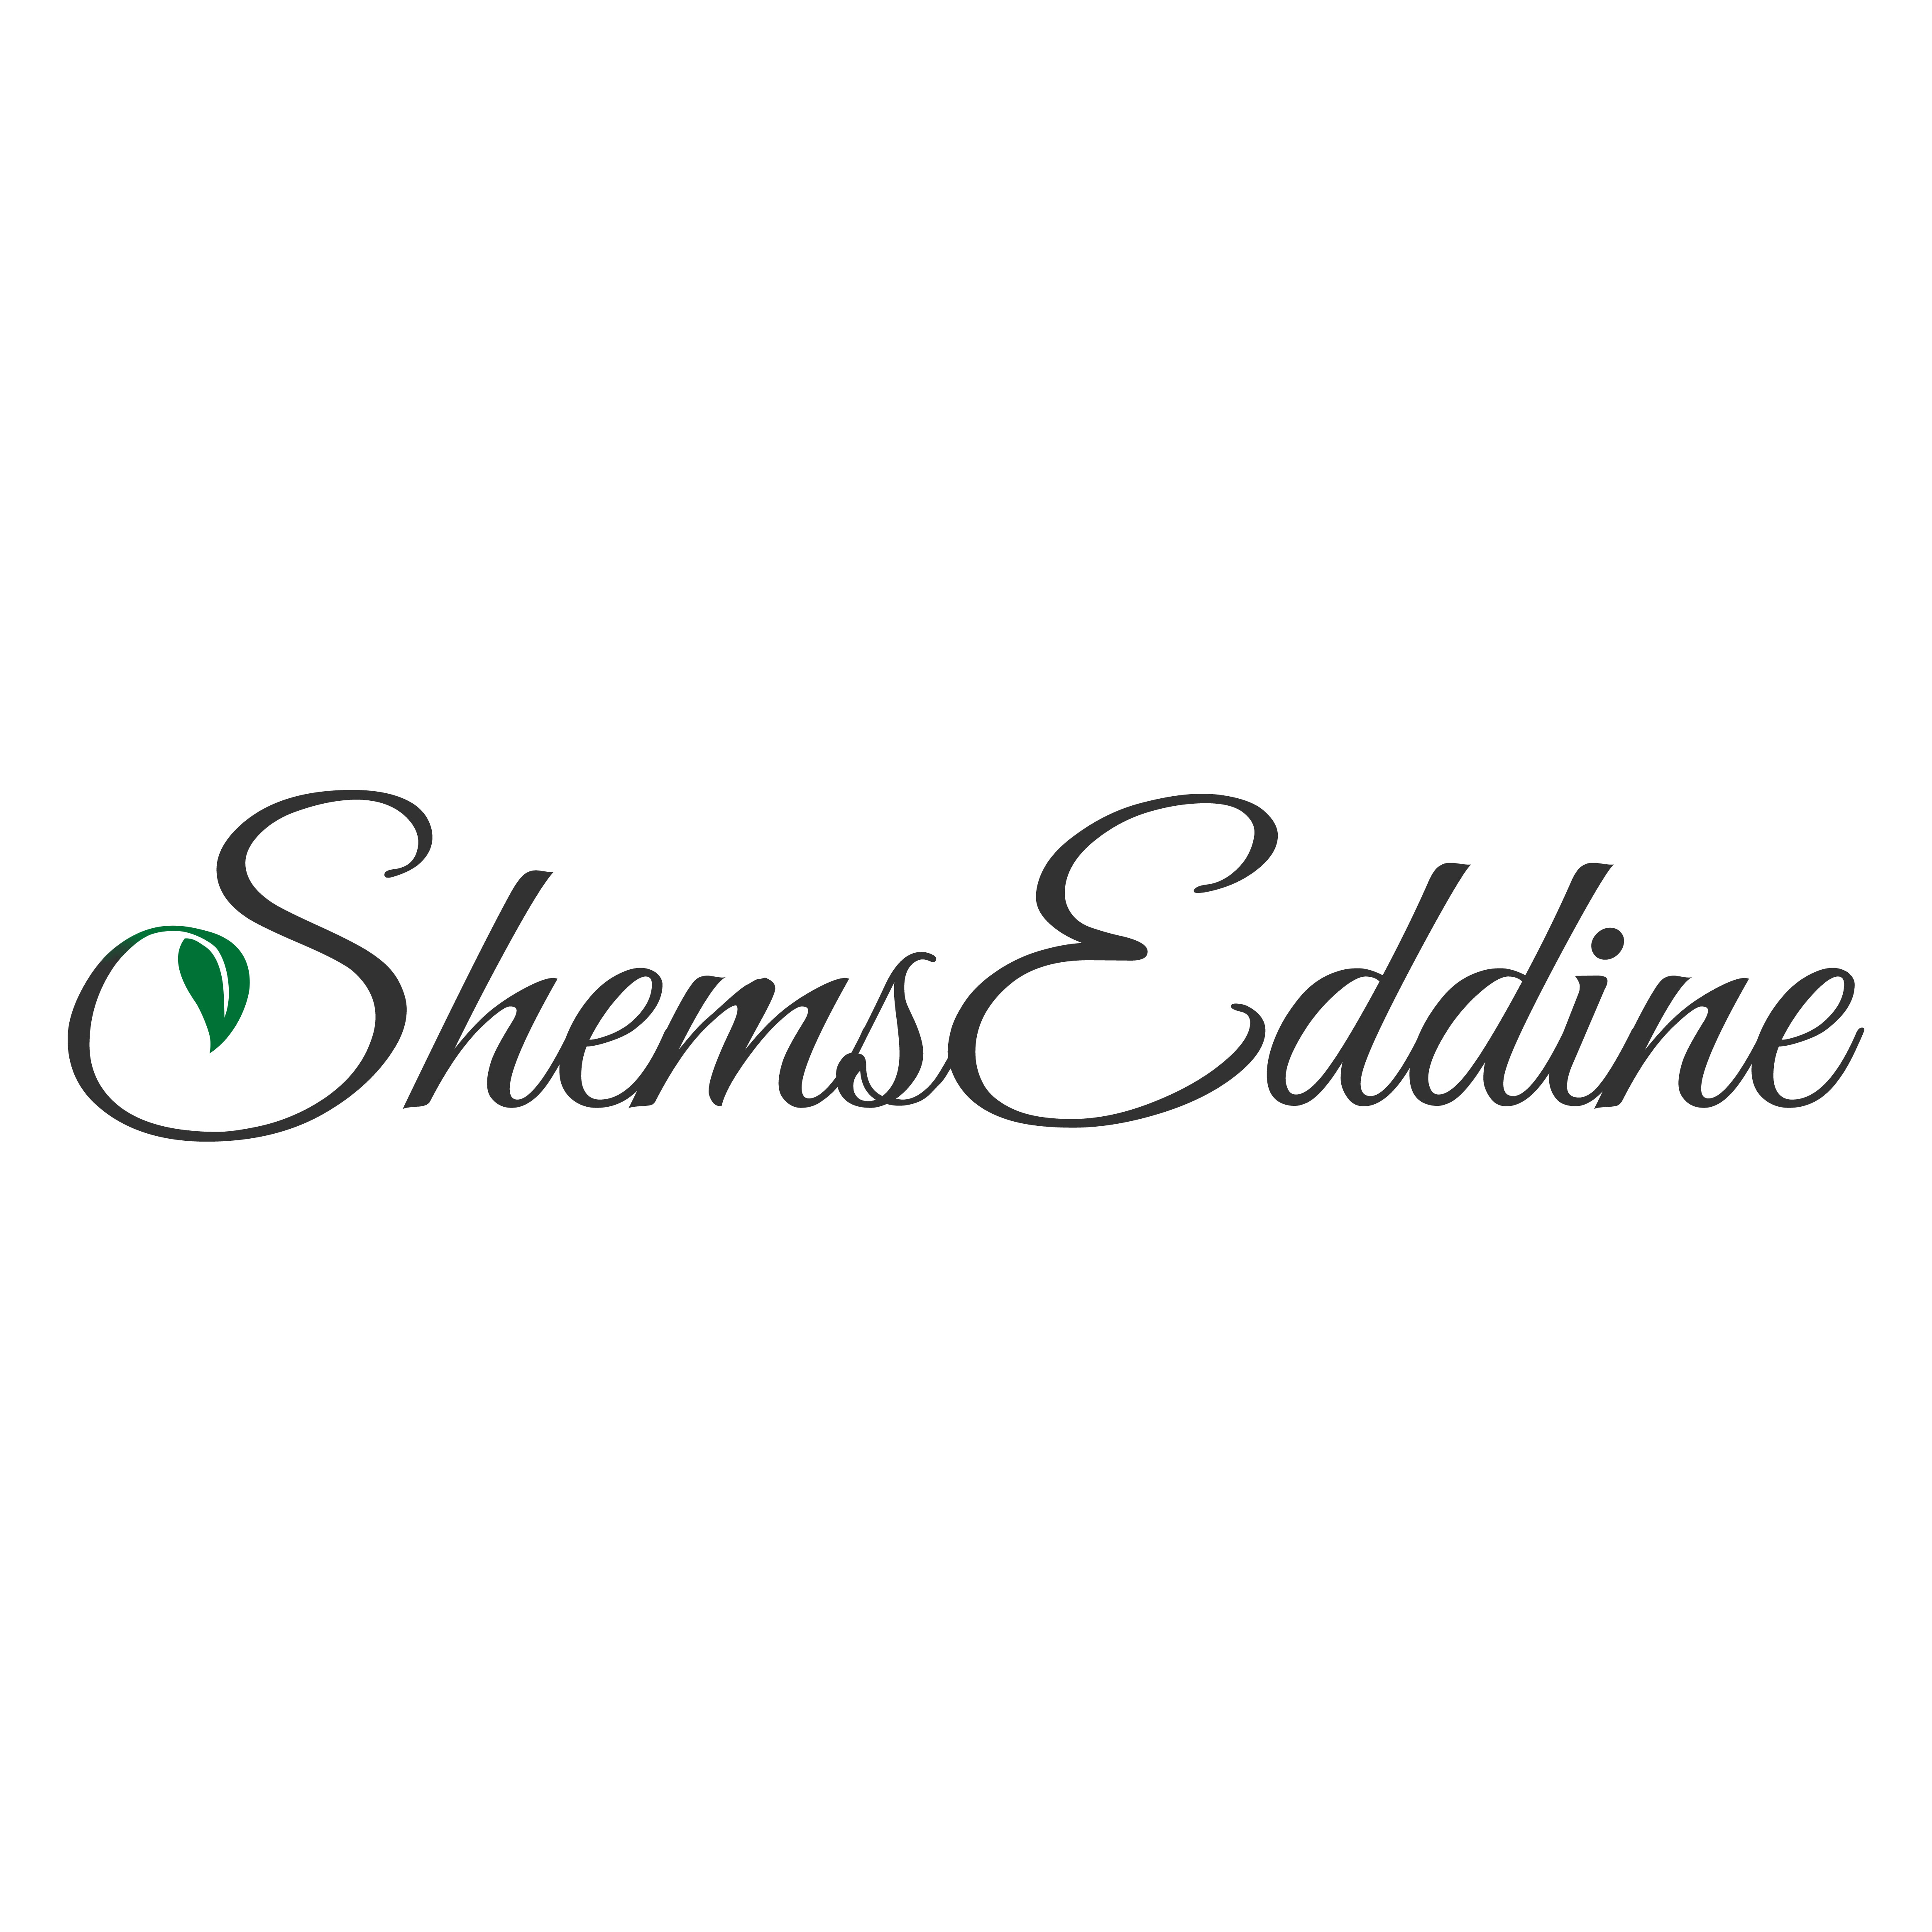 shems.eddine.m's profile picture